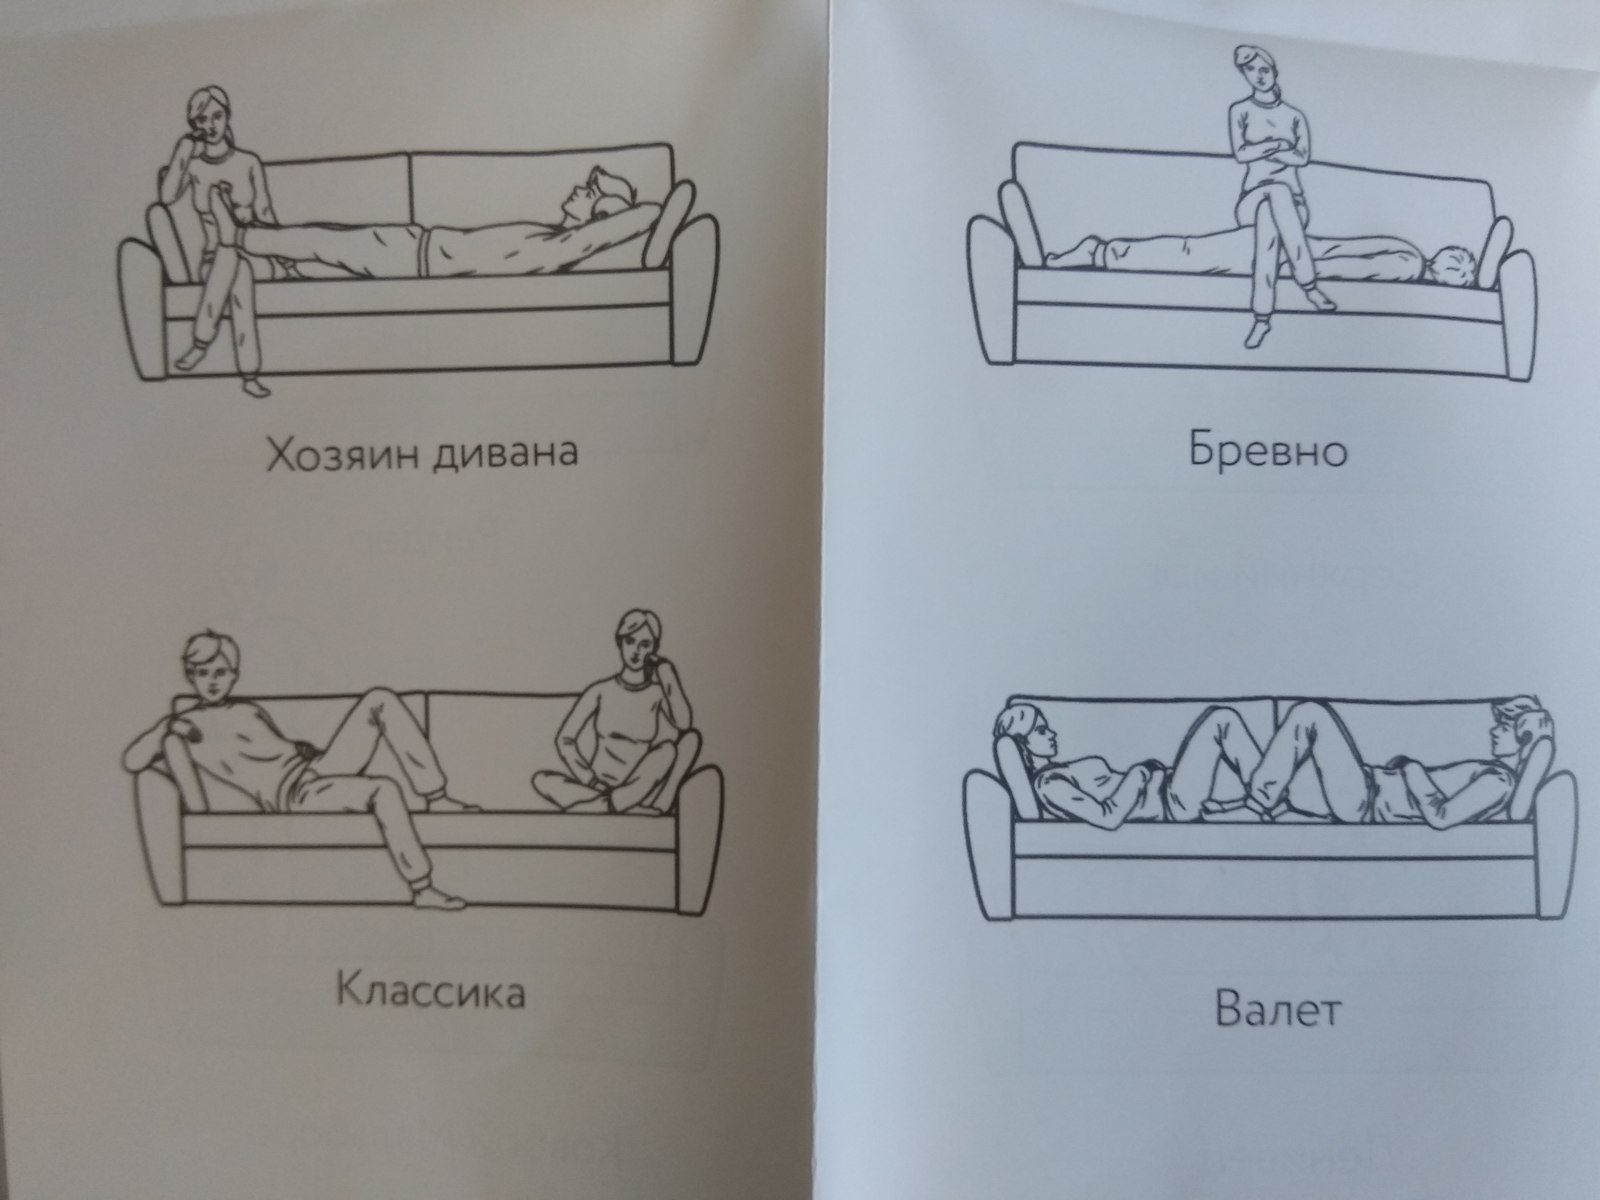 Секс на диване удобен если размер довольно большой для ебли